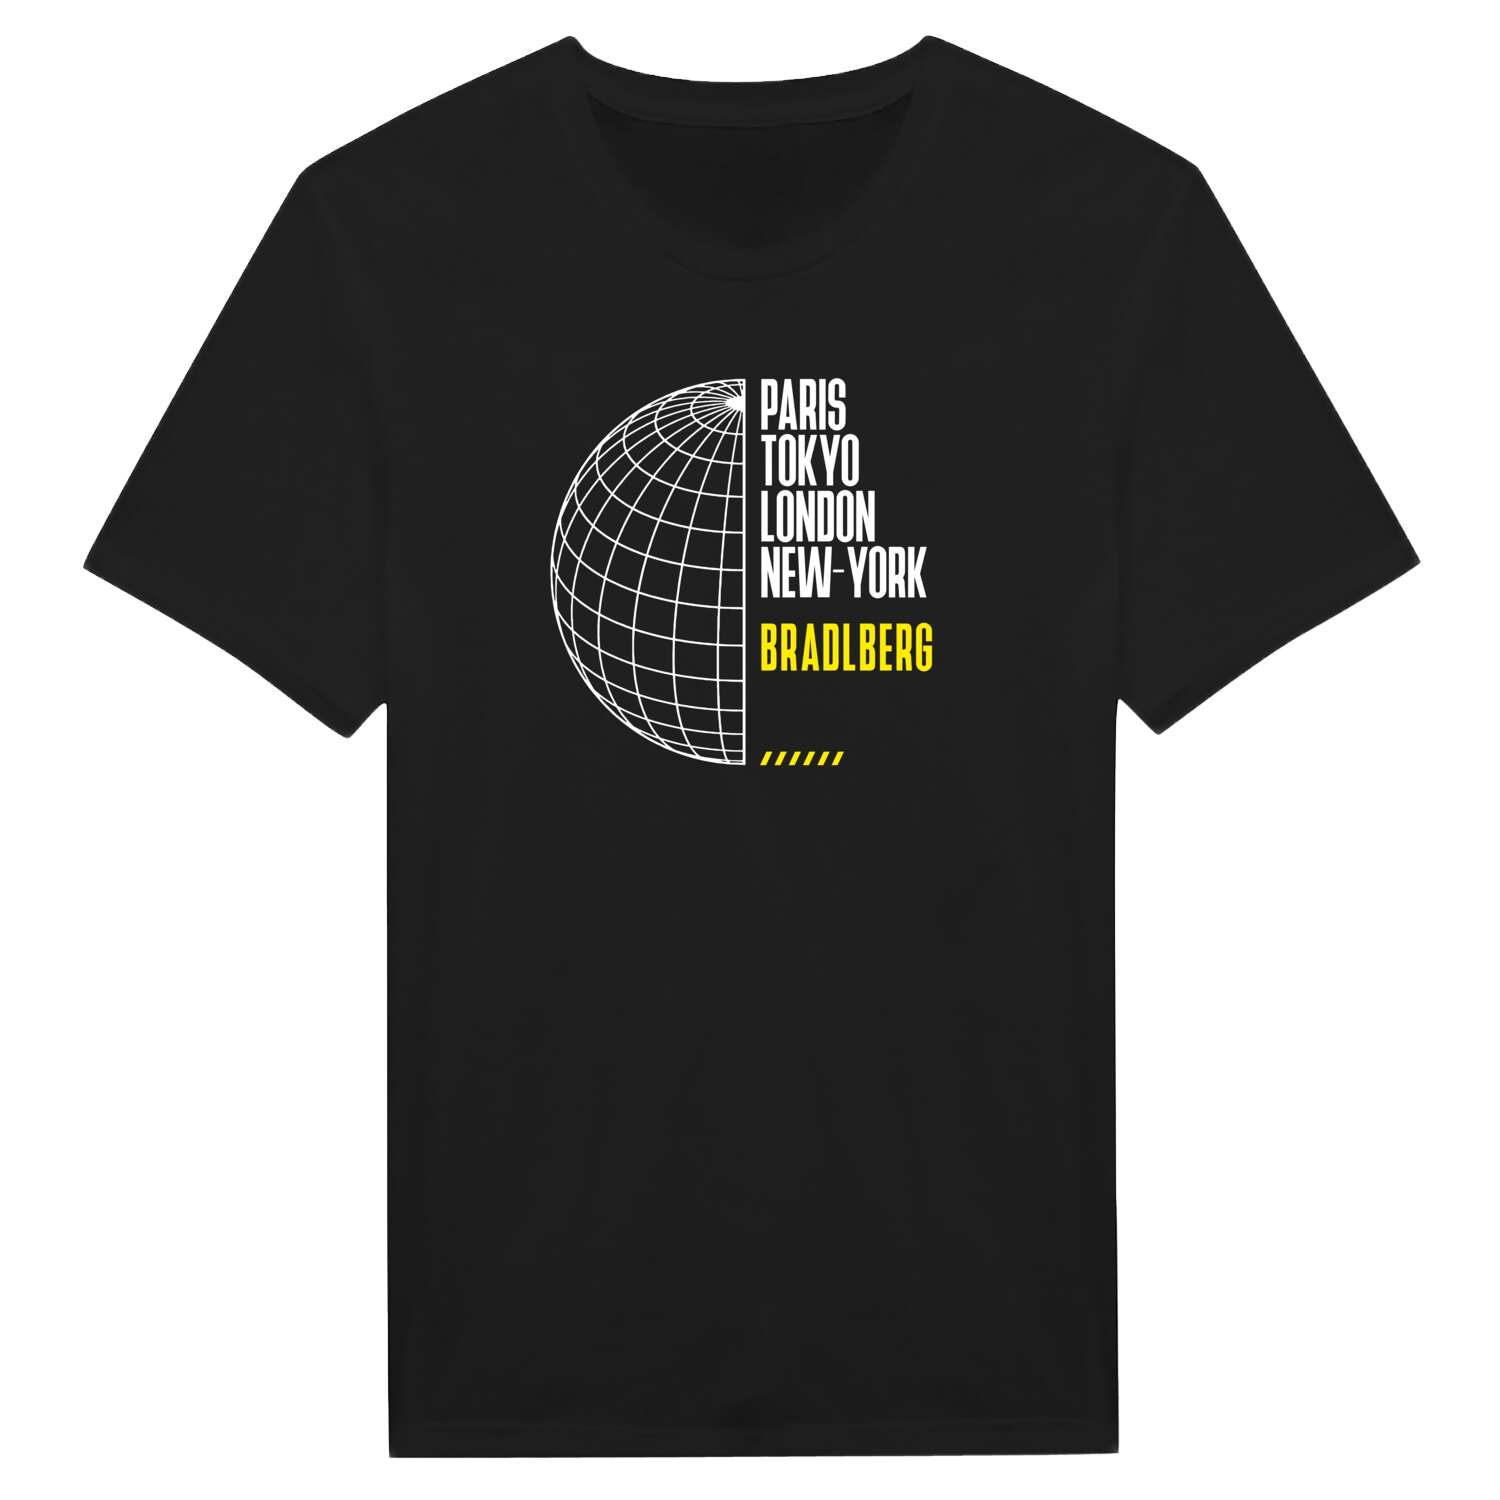 Bradlberg T-Shirt »Paris Tokyo London«